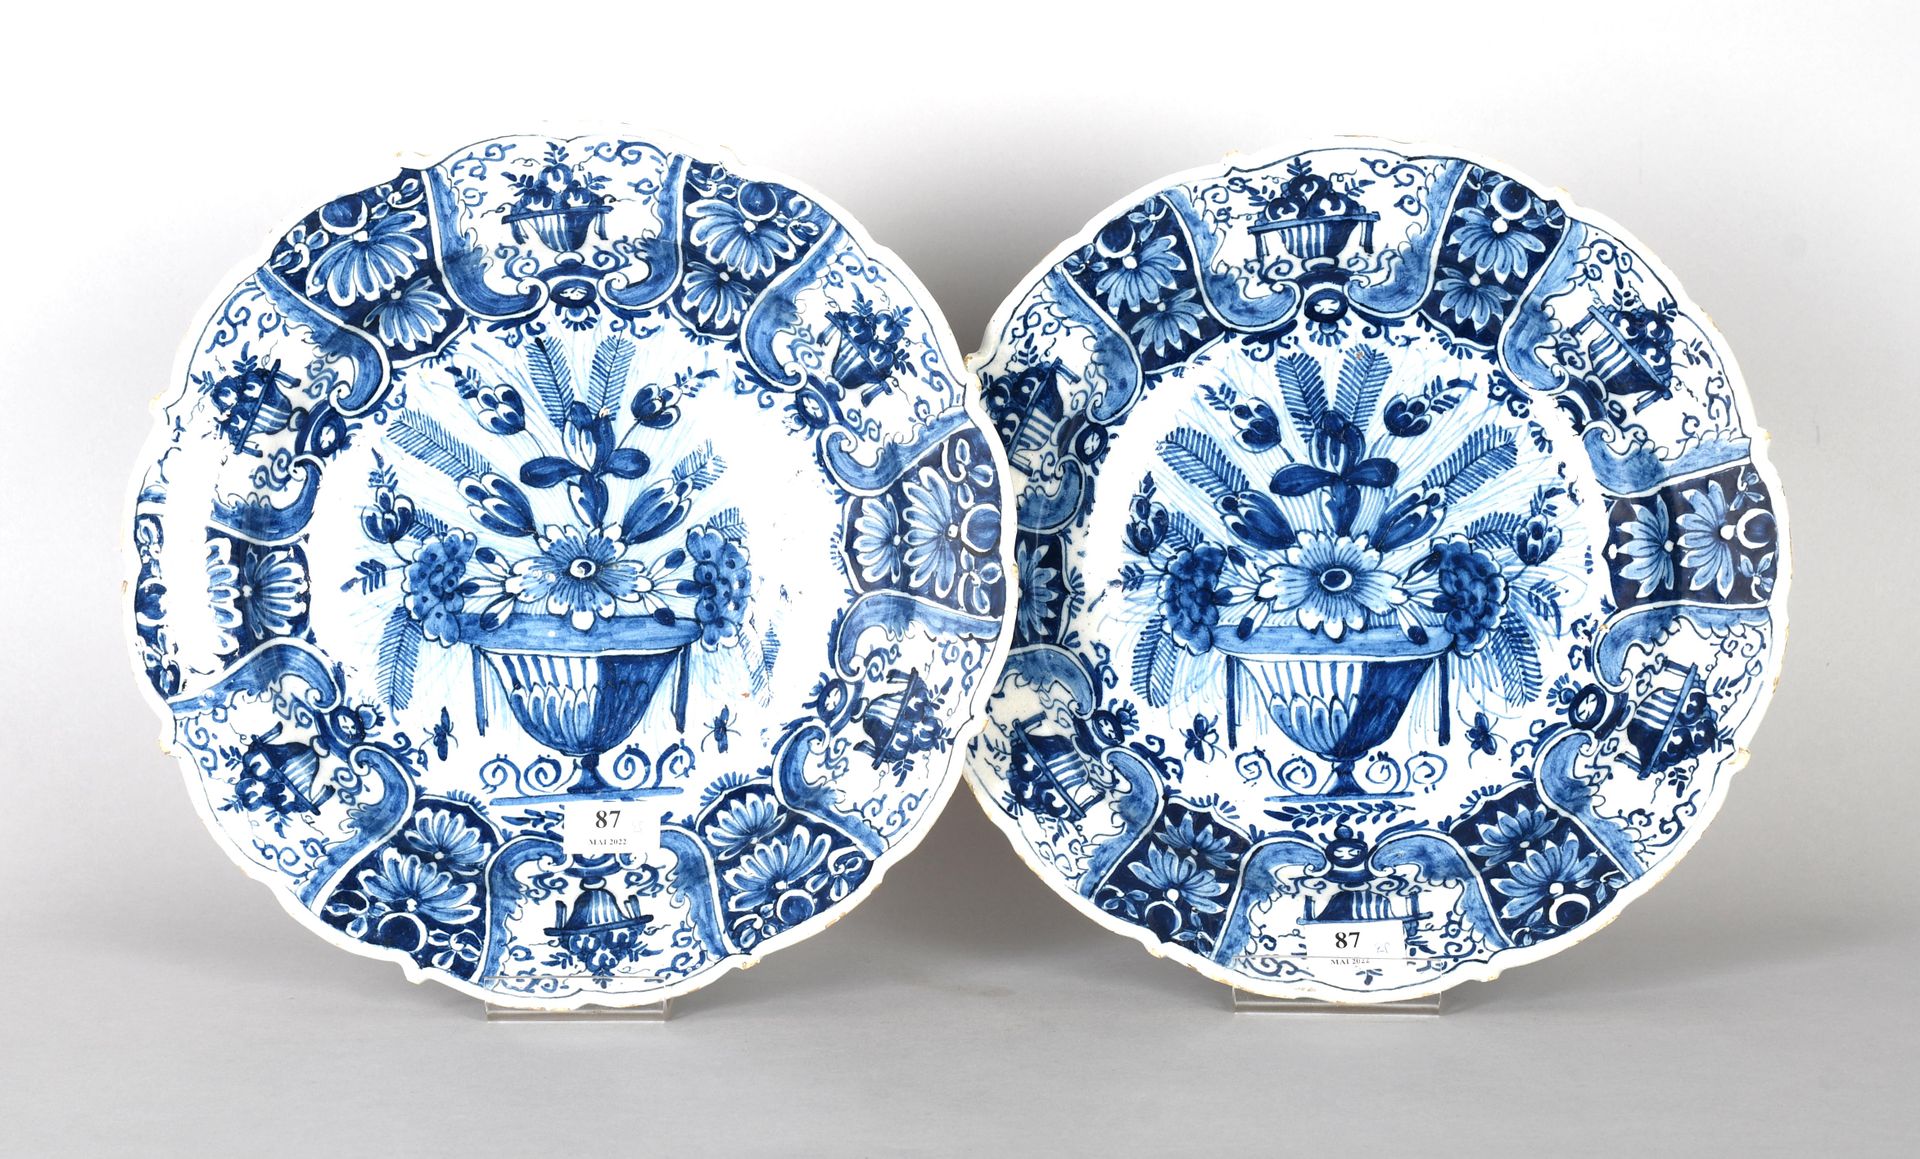 Null Delft, siglo XVIII

Pareja de platos redondos y profundos con bordes curvos&hellip;